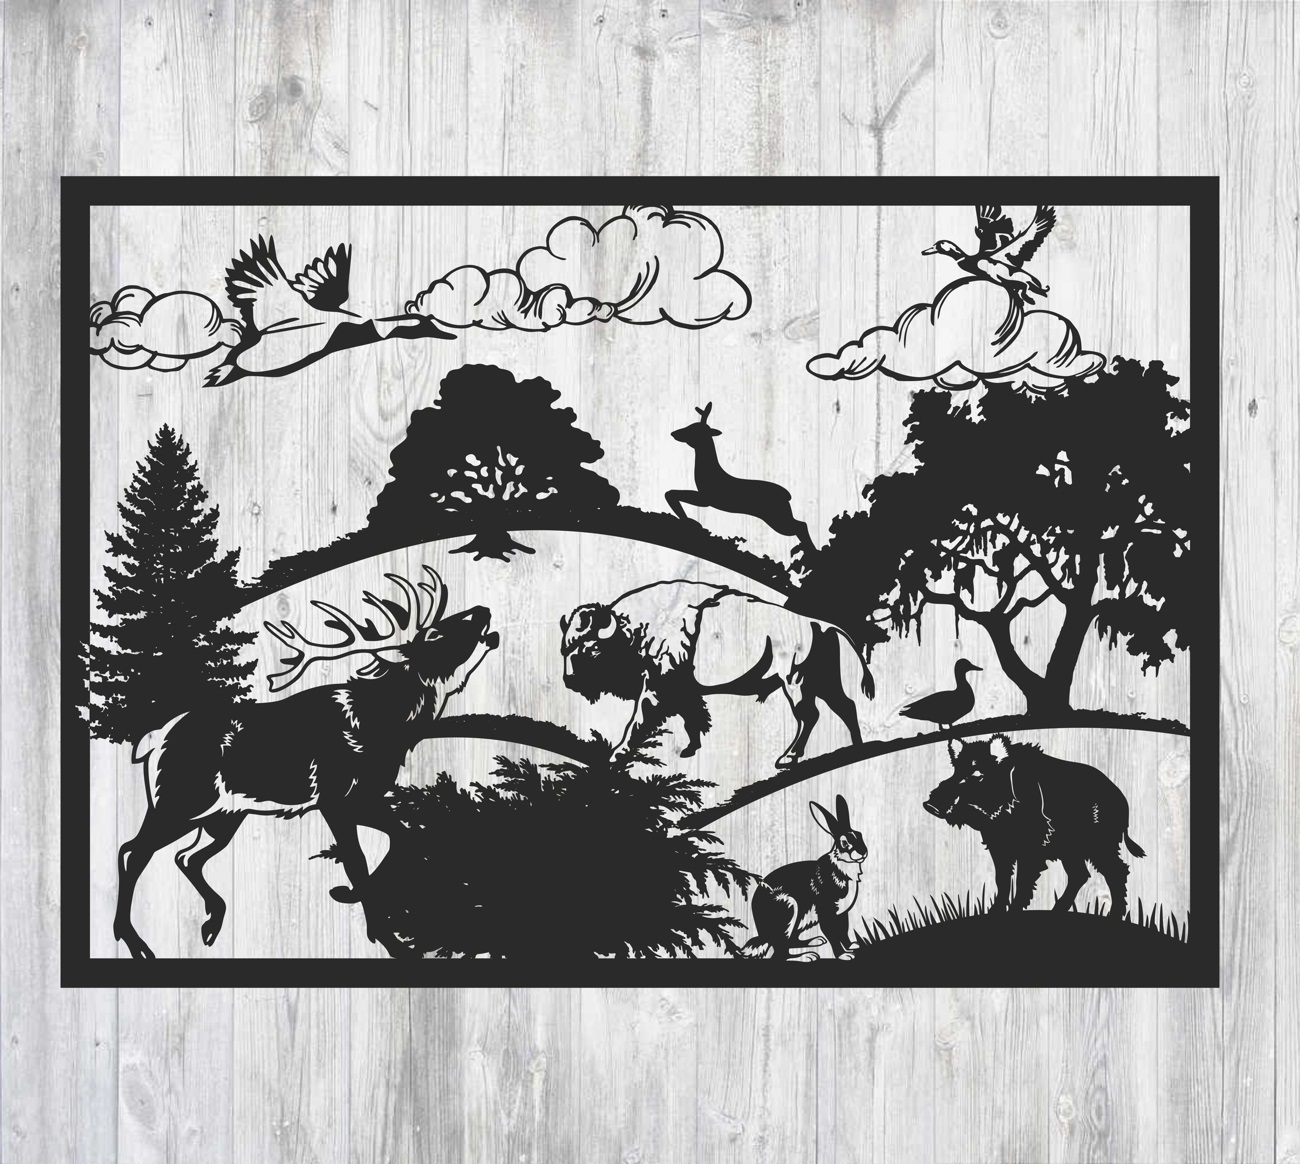 Diseño de panel de barandilla decorativa de vida silvestre cortada con láser